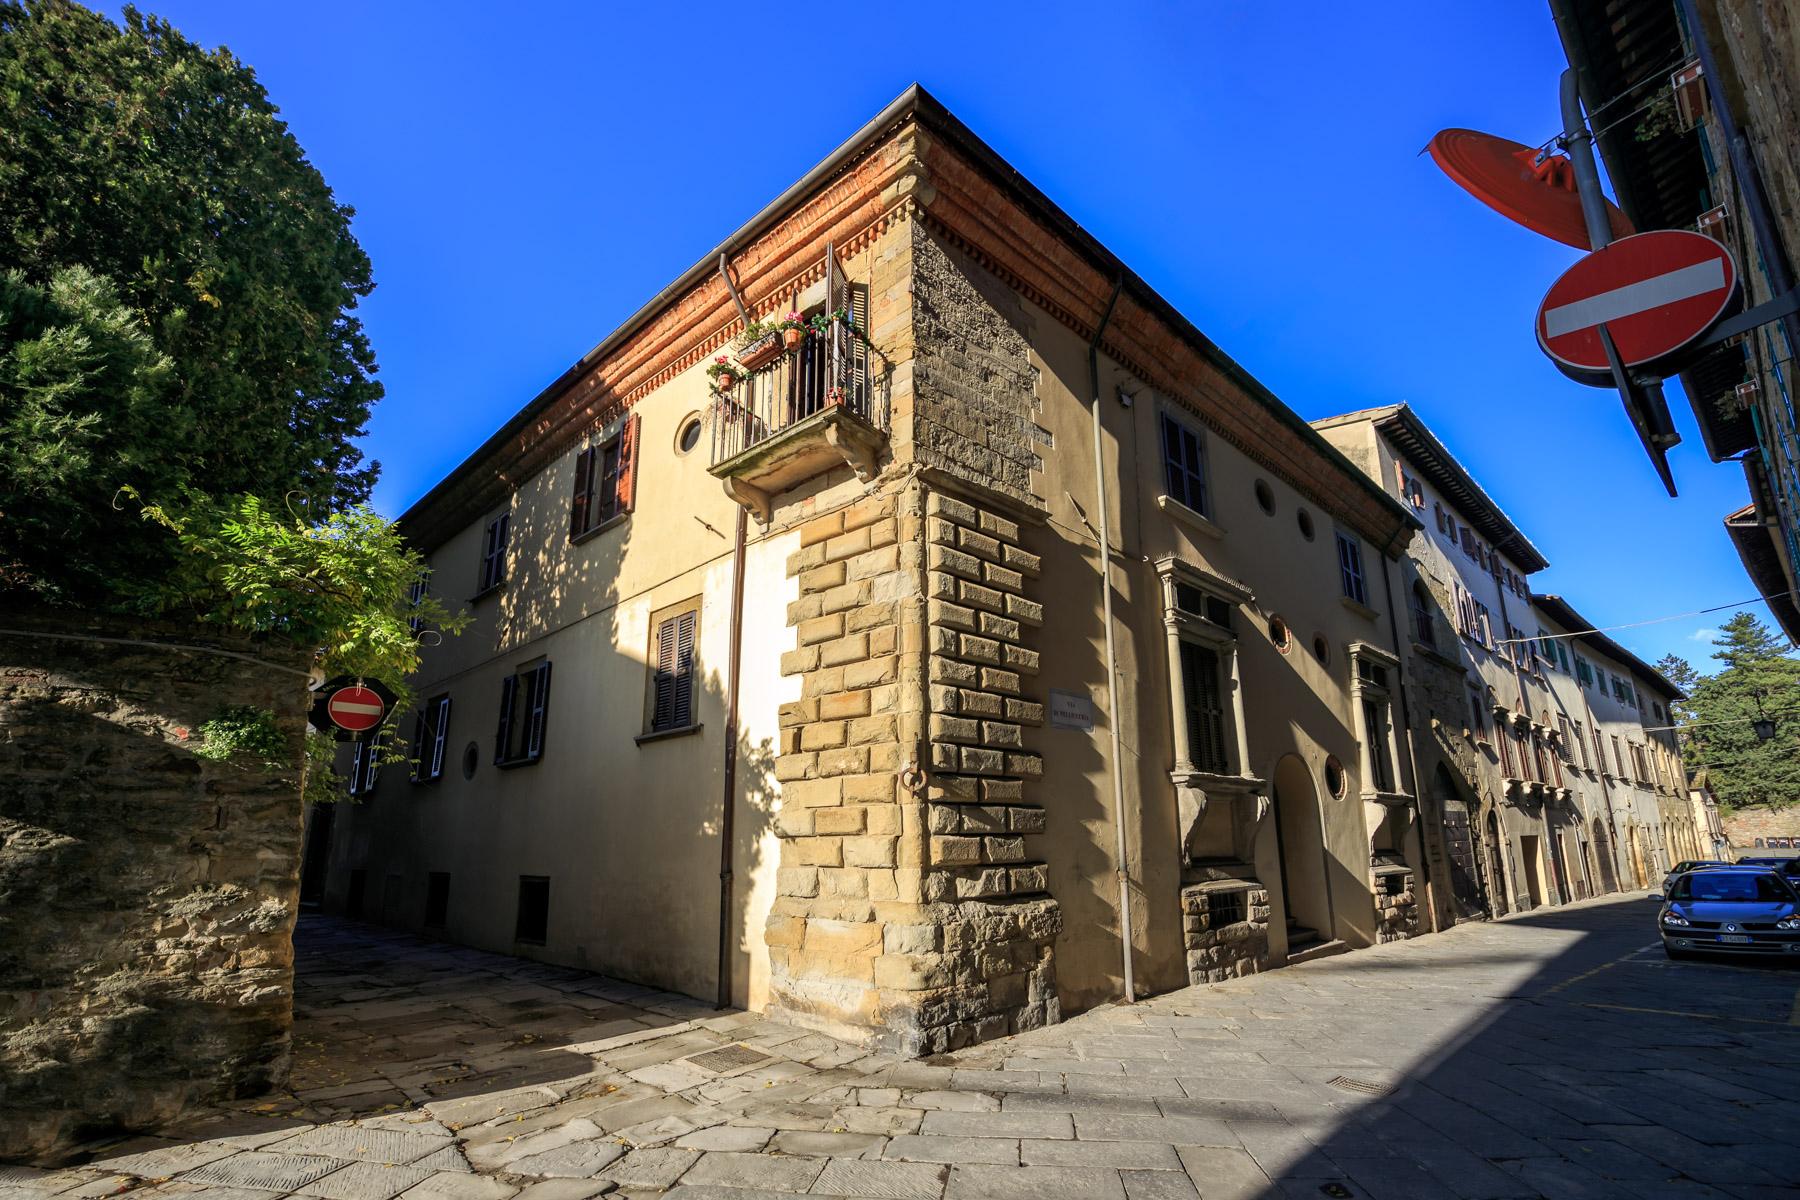 Palazzo Rinascimentale in Vendita a pochi passi da Piazza Grande, Arezzo - 1